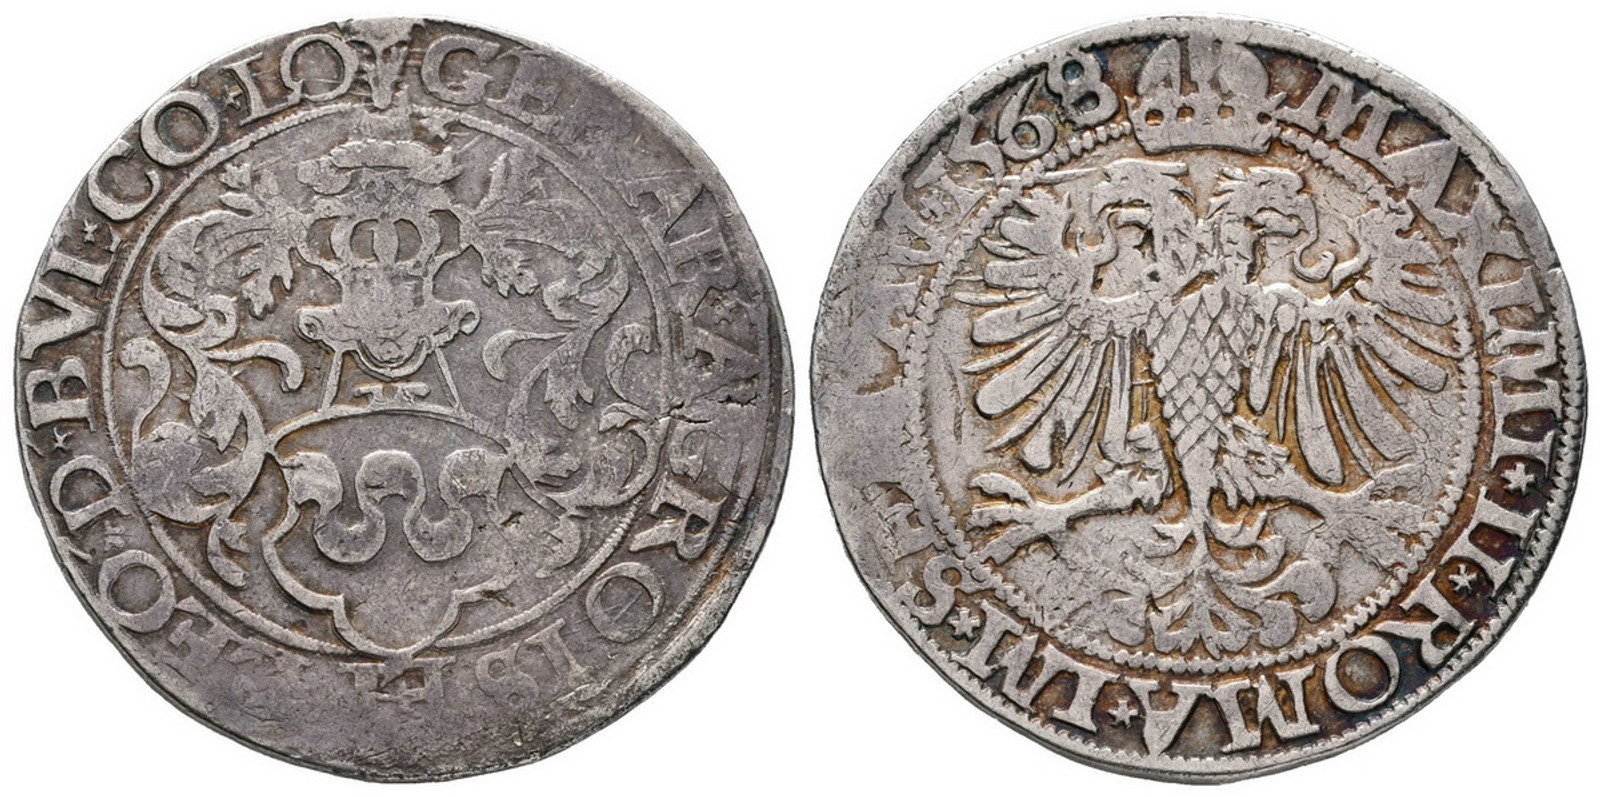 Belgie - Liege, biskupství, Herhard von Groesbeck, 1564 - 1580